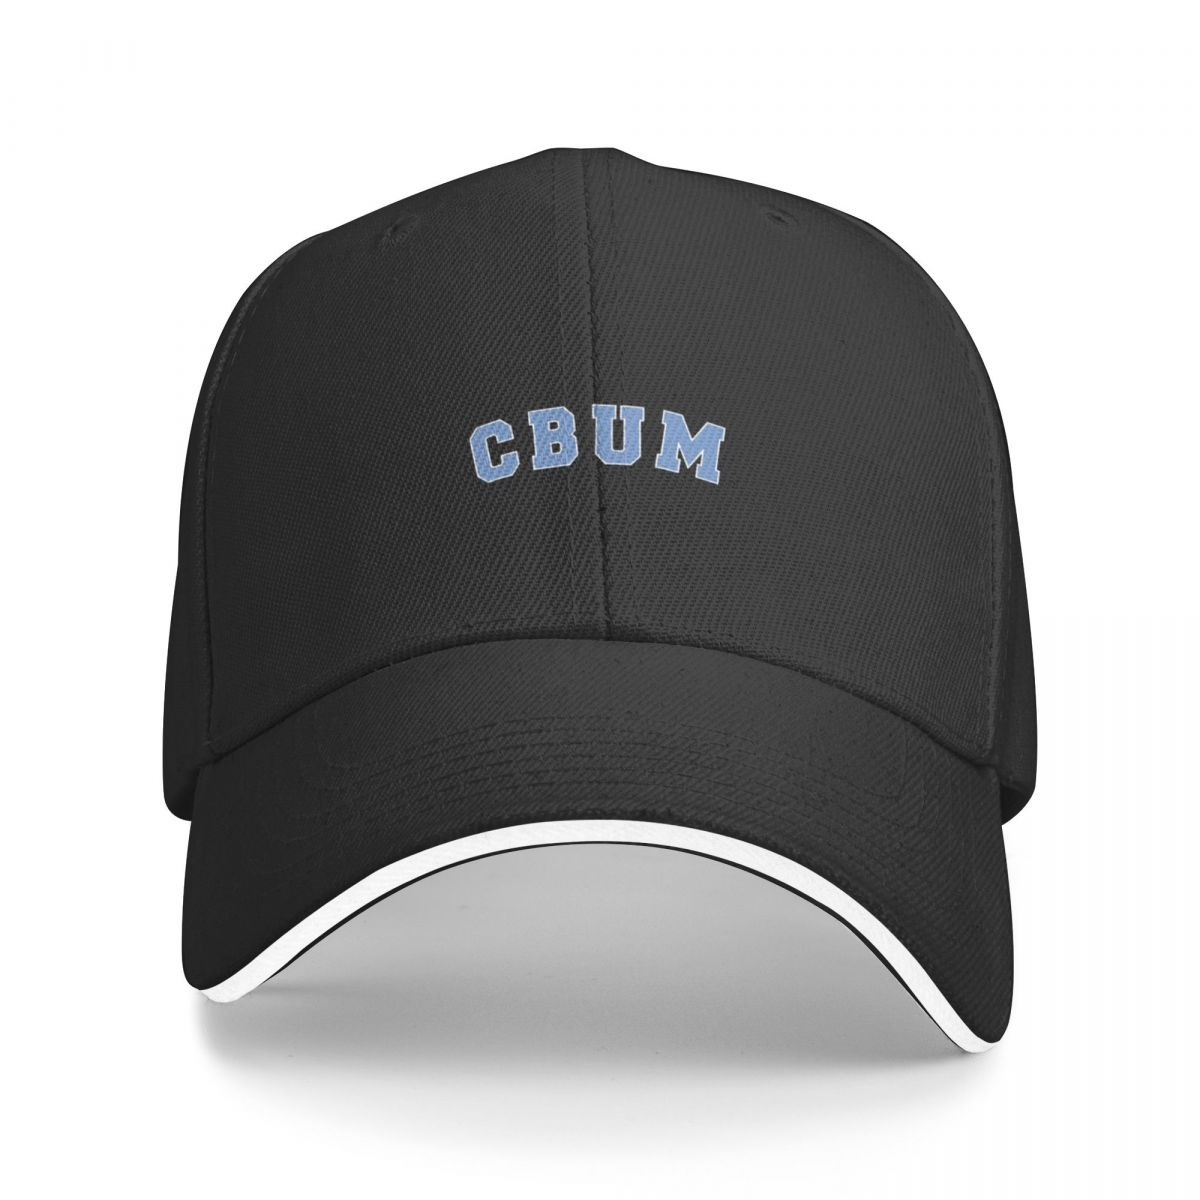 chris-bumstead-hats-caps-trucker-hat